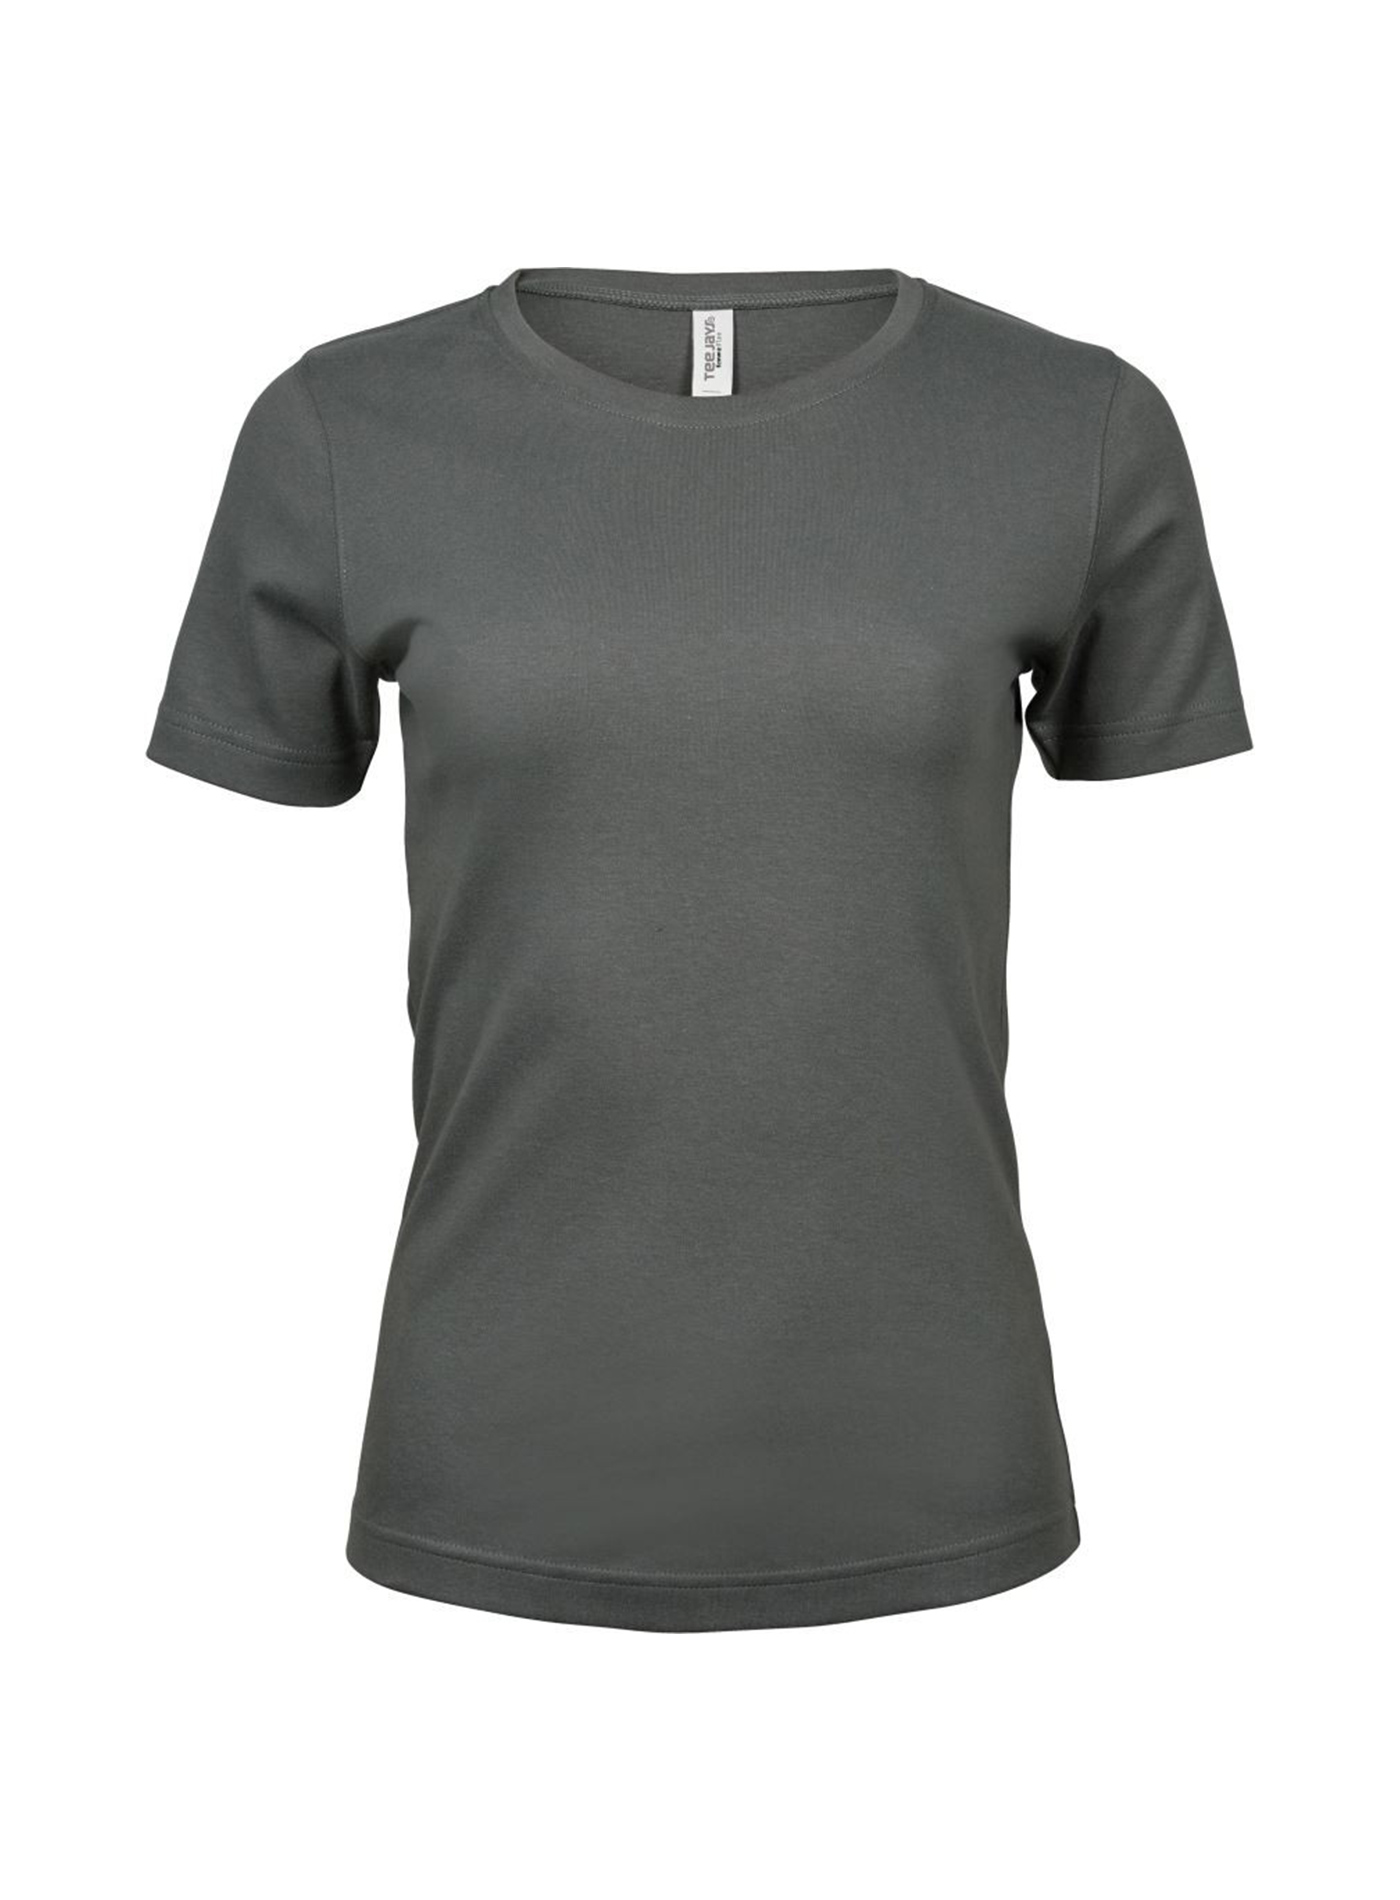 Silné bavlněné tričko Tee Jays Interlock - Sytě šedá XL